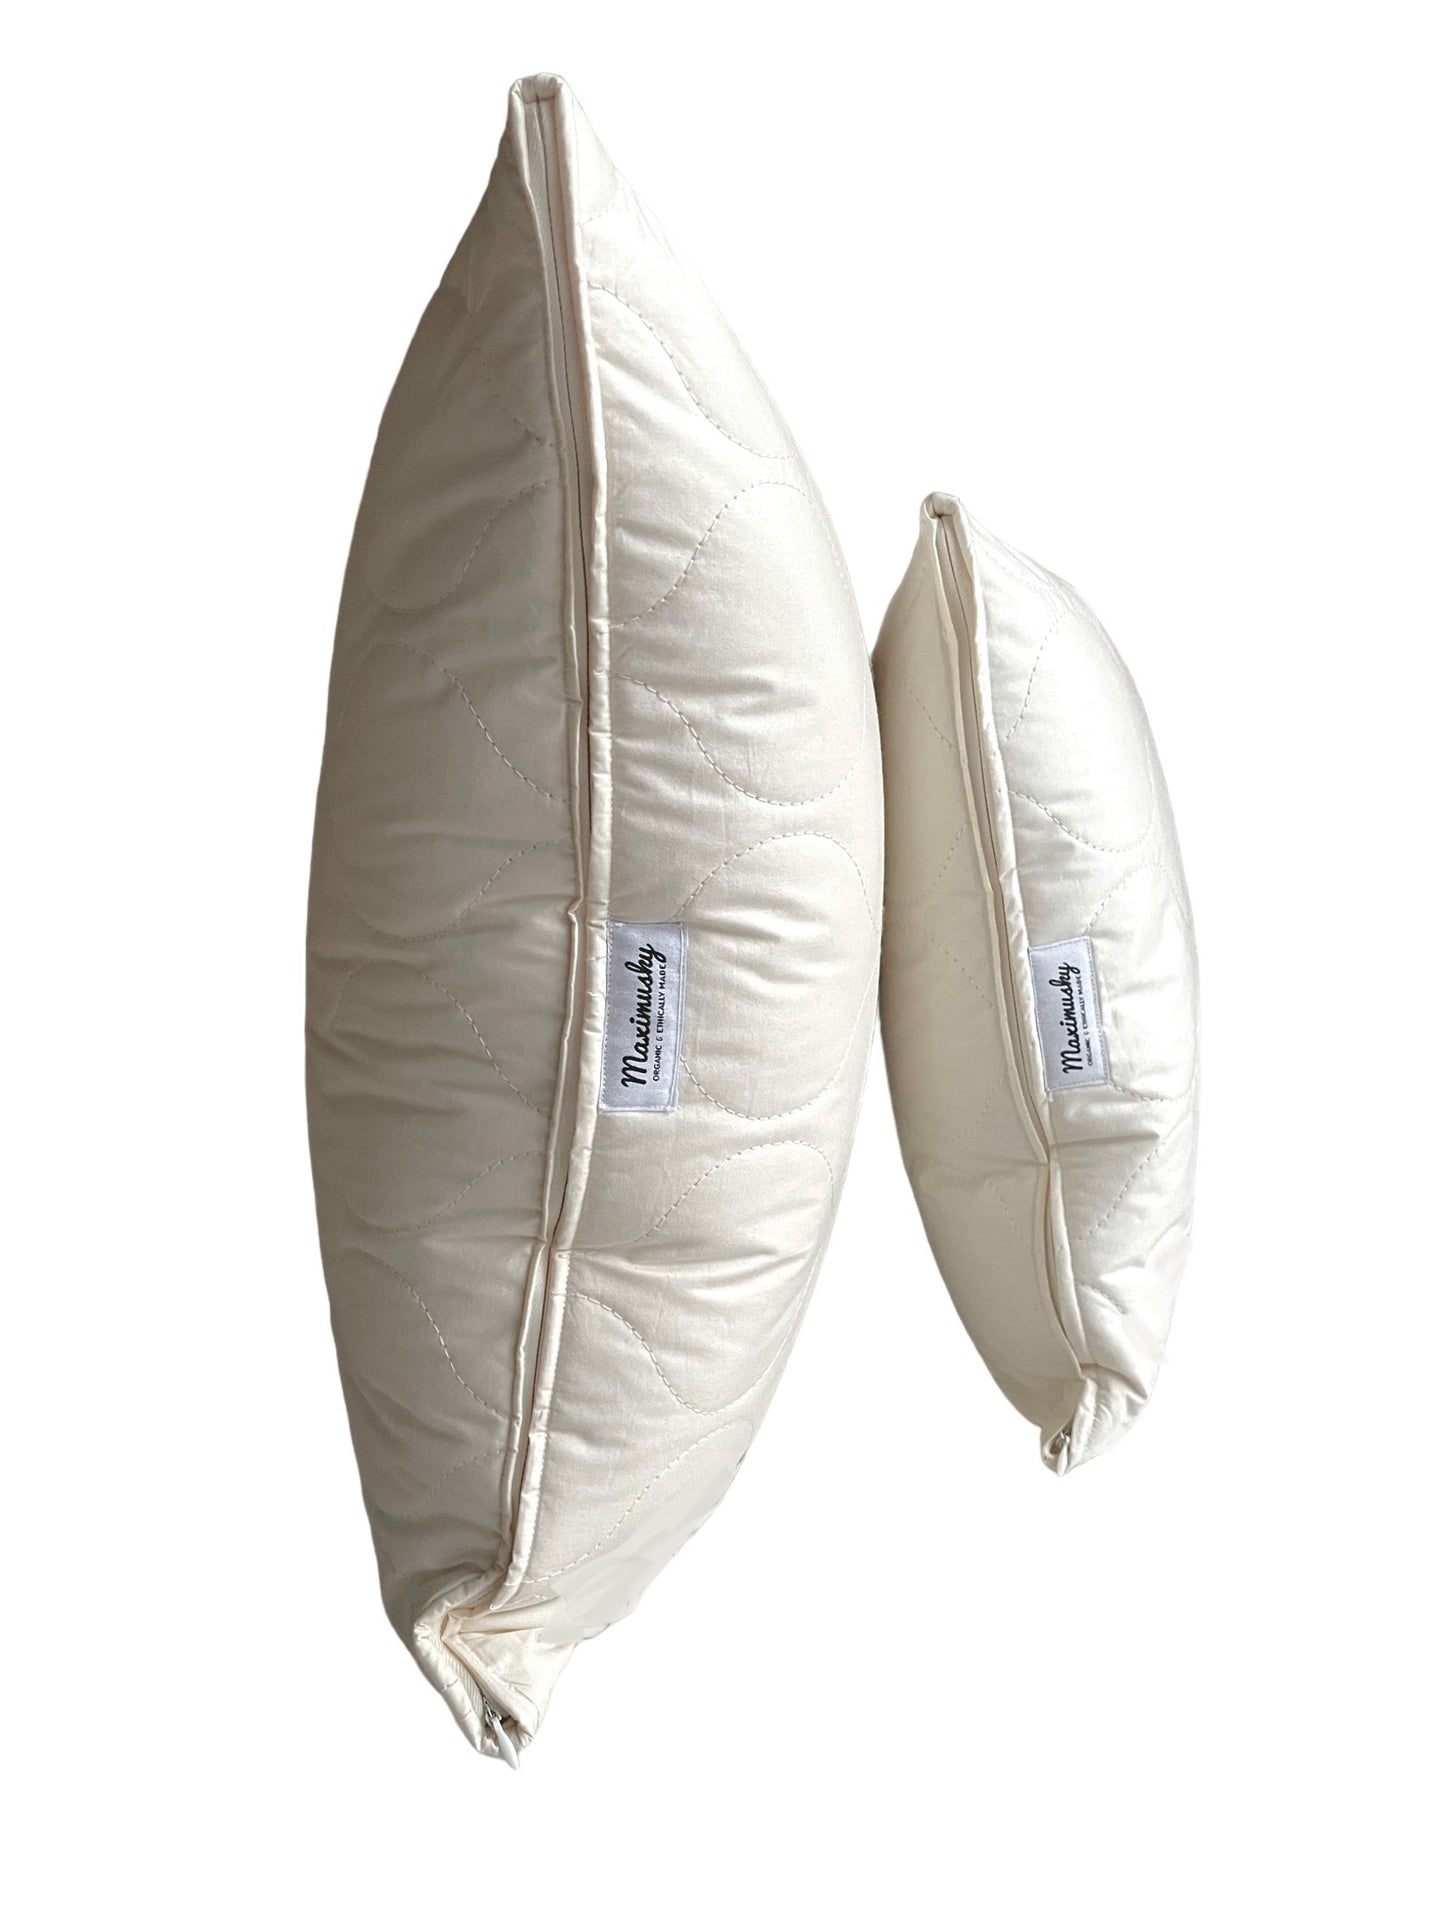 Poduszki wełniane naturalne dla dzieci i dorosłych. Rozmiary 40x60 50x60 50x70 70x80 na zamówienie 